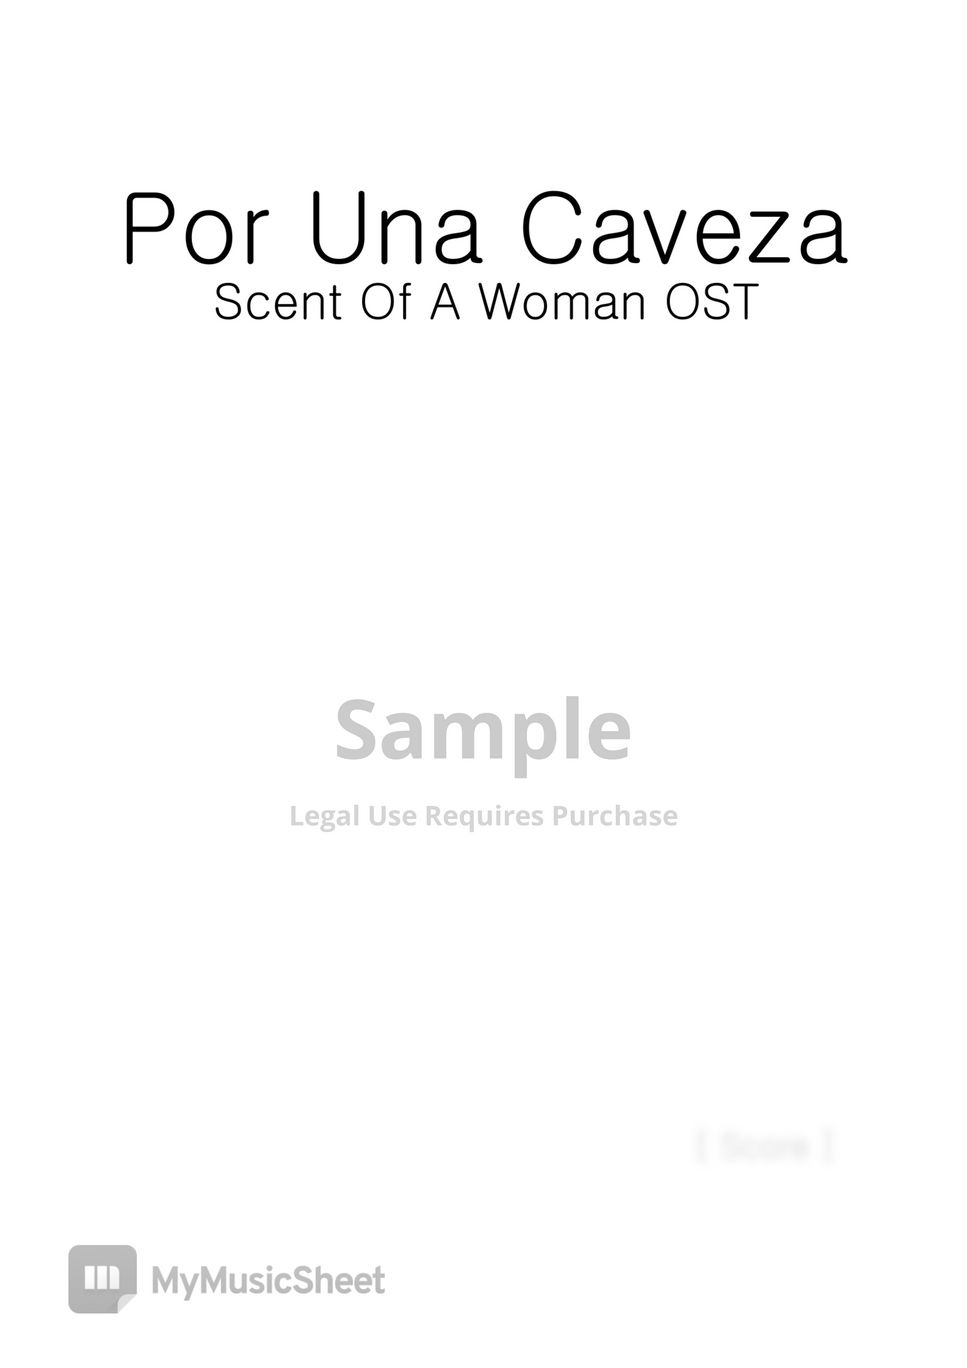 Carlos Gardel - Por Una Cabeza 'Scent of a Woman' (4Violin Ensemble) by VIO